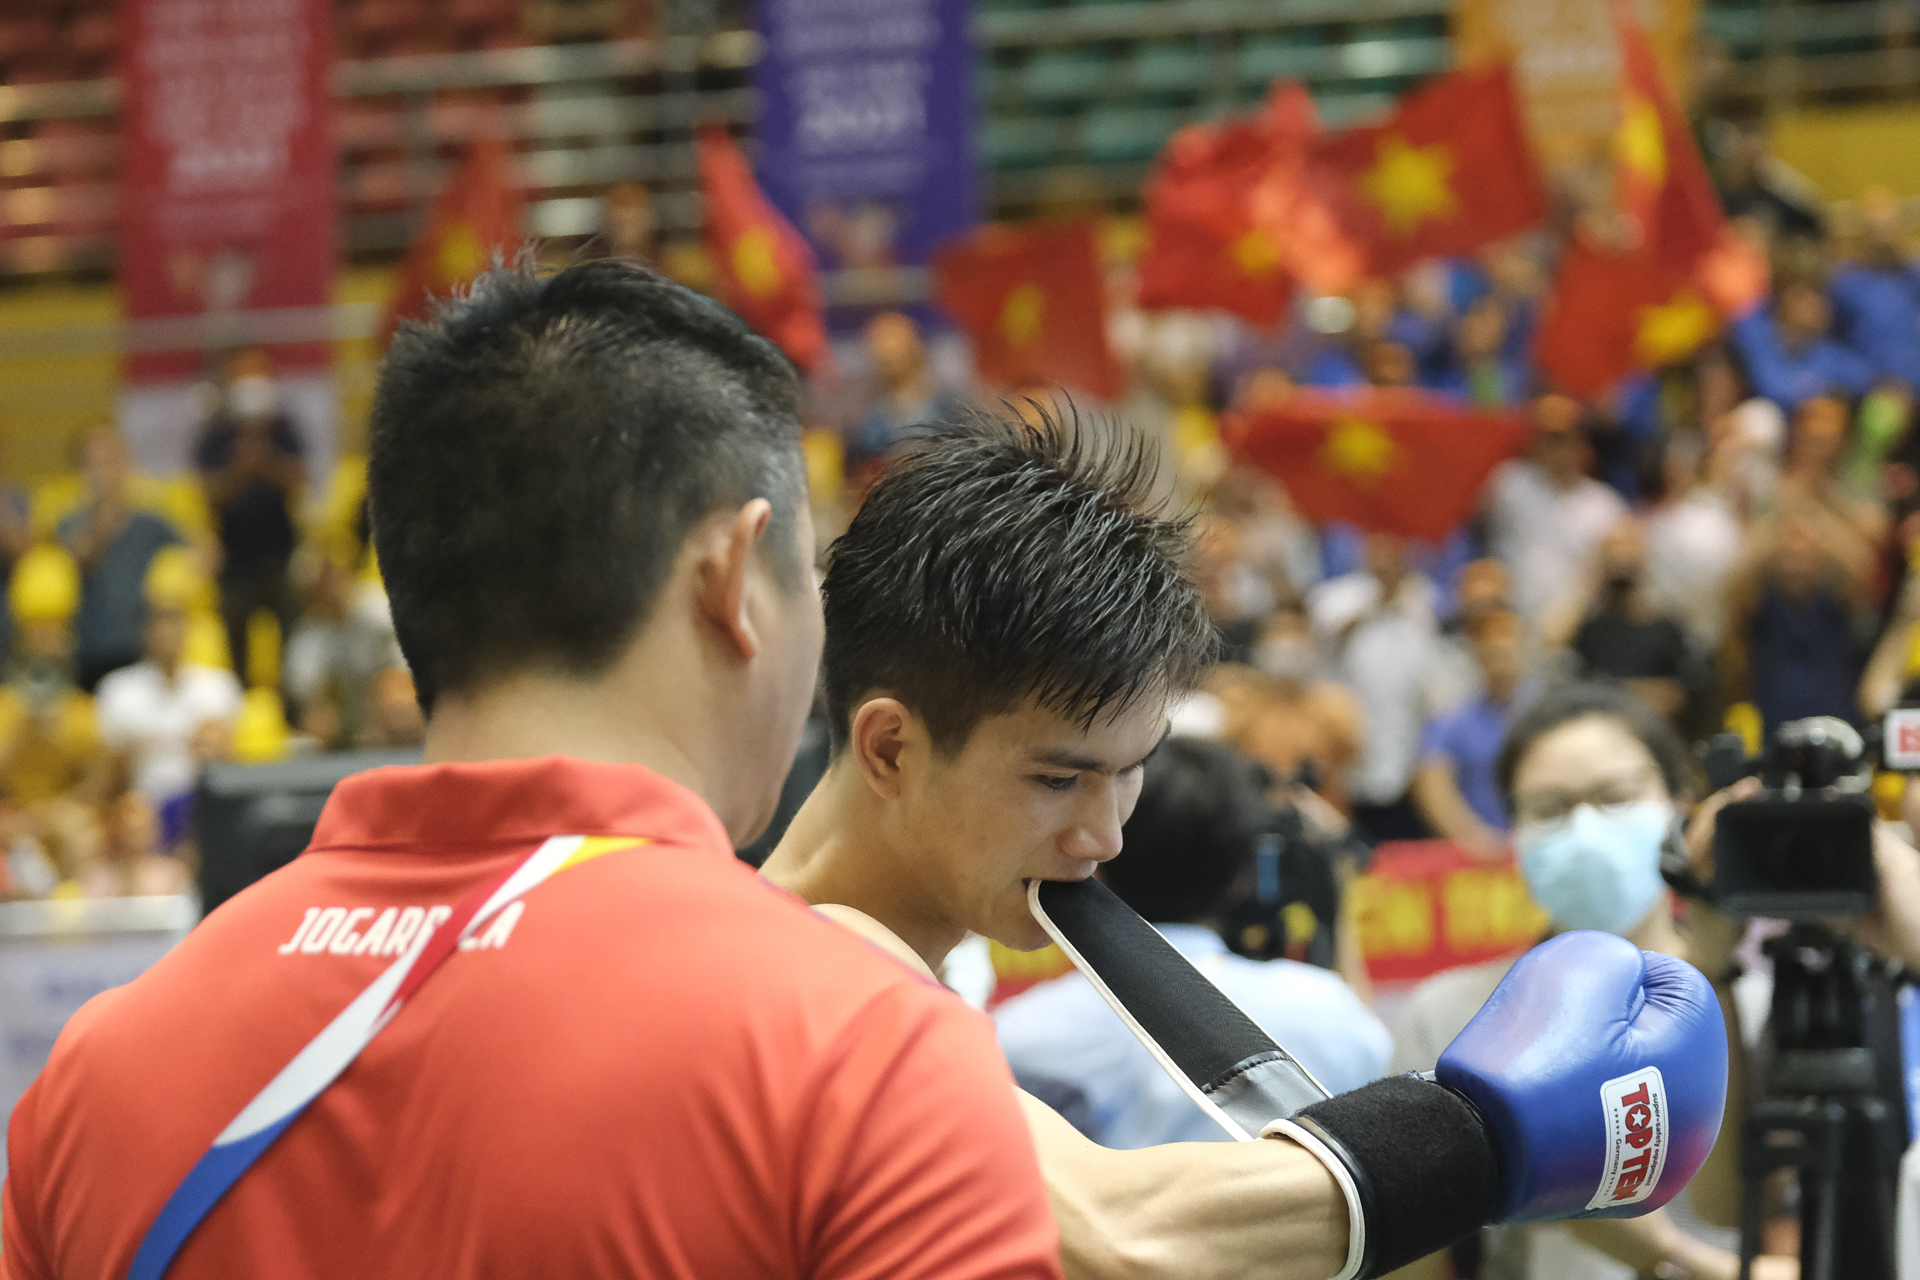 Nguyễn Quang Huy đeo găng trước khi thượng đài trận bán kết hạng cân 60kg low kick với sự cổ vũ cuồng nhiệt từ khán đài